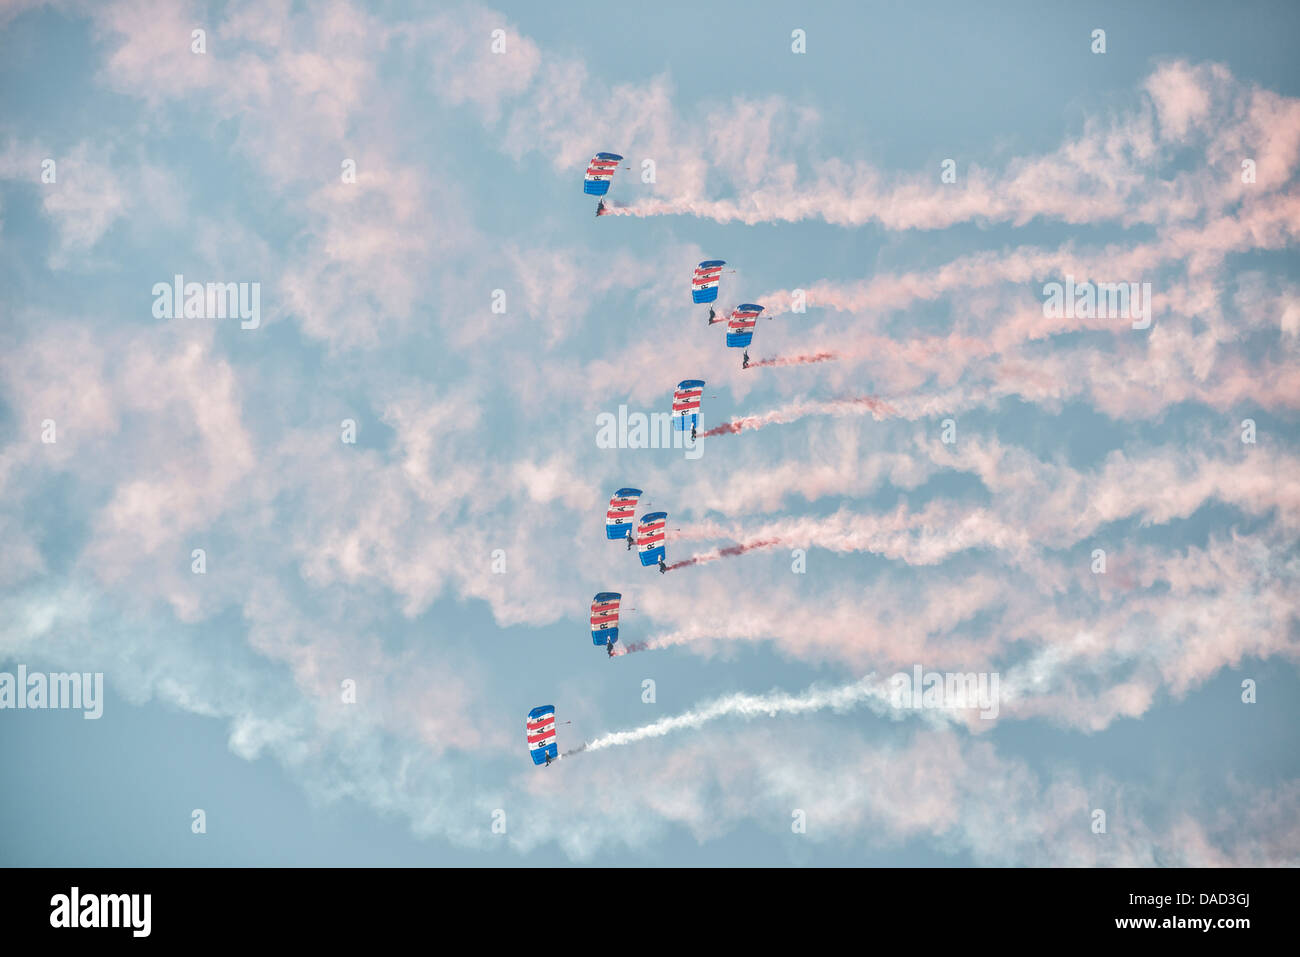 Fallschirmspringer aus der Royal Air Force Falcons anzeigen Team füllen den Himmel mit ihren bunten Fallschirm Verdecke und Rauch Wanderwege Stockfoto